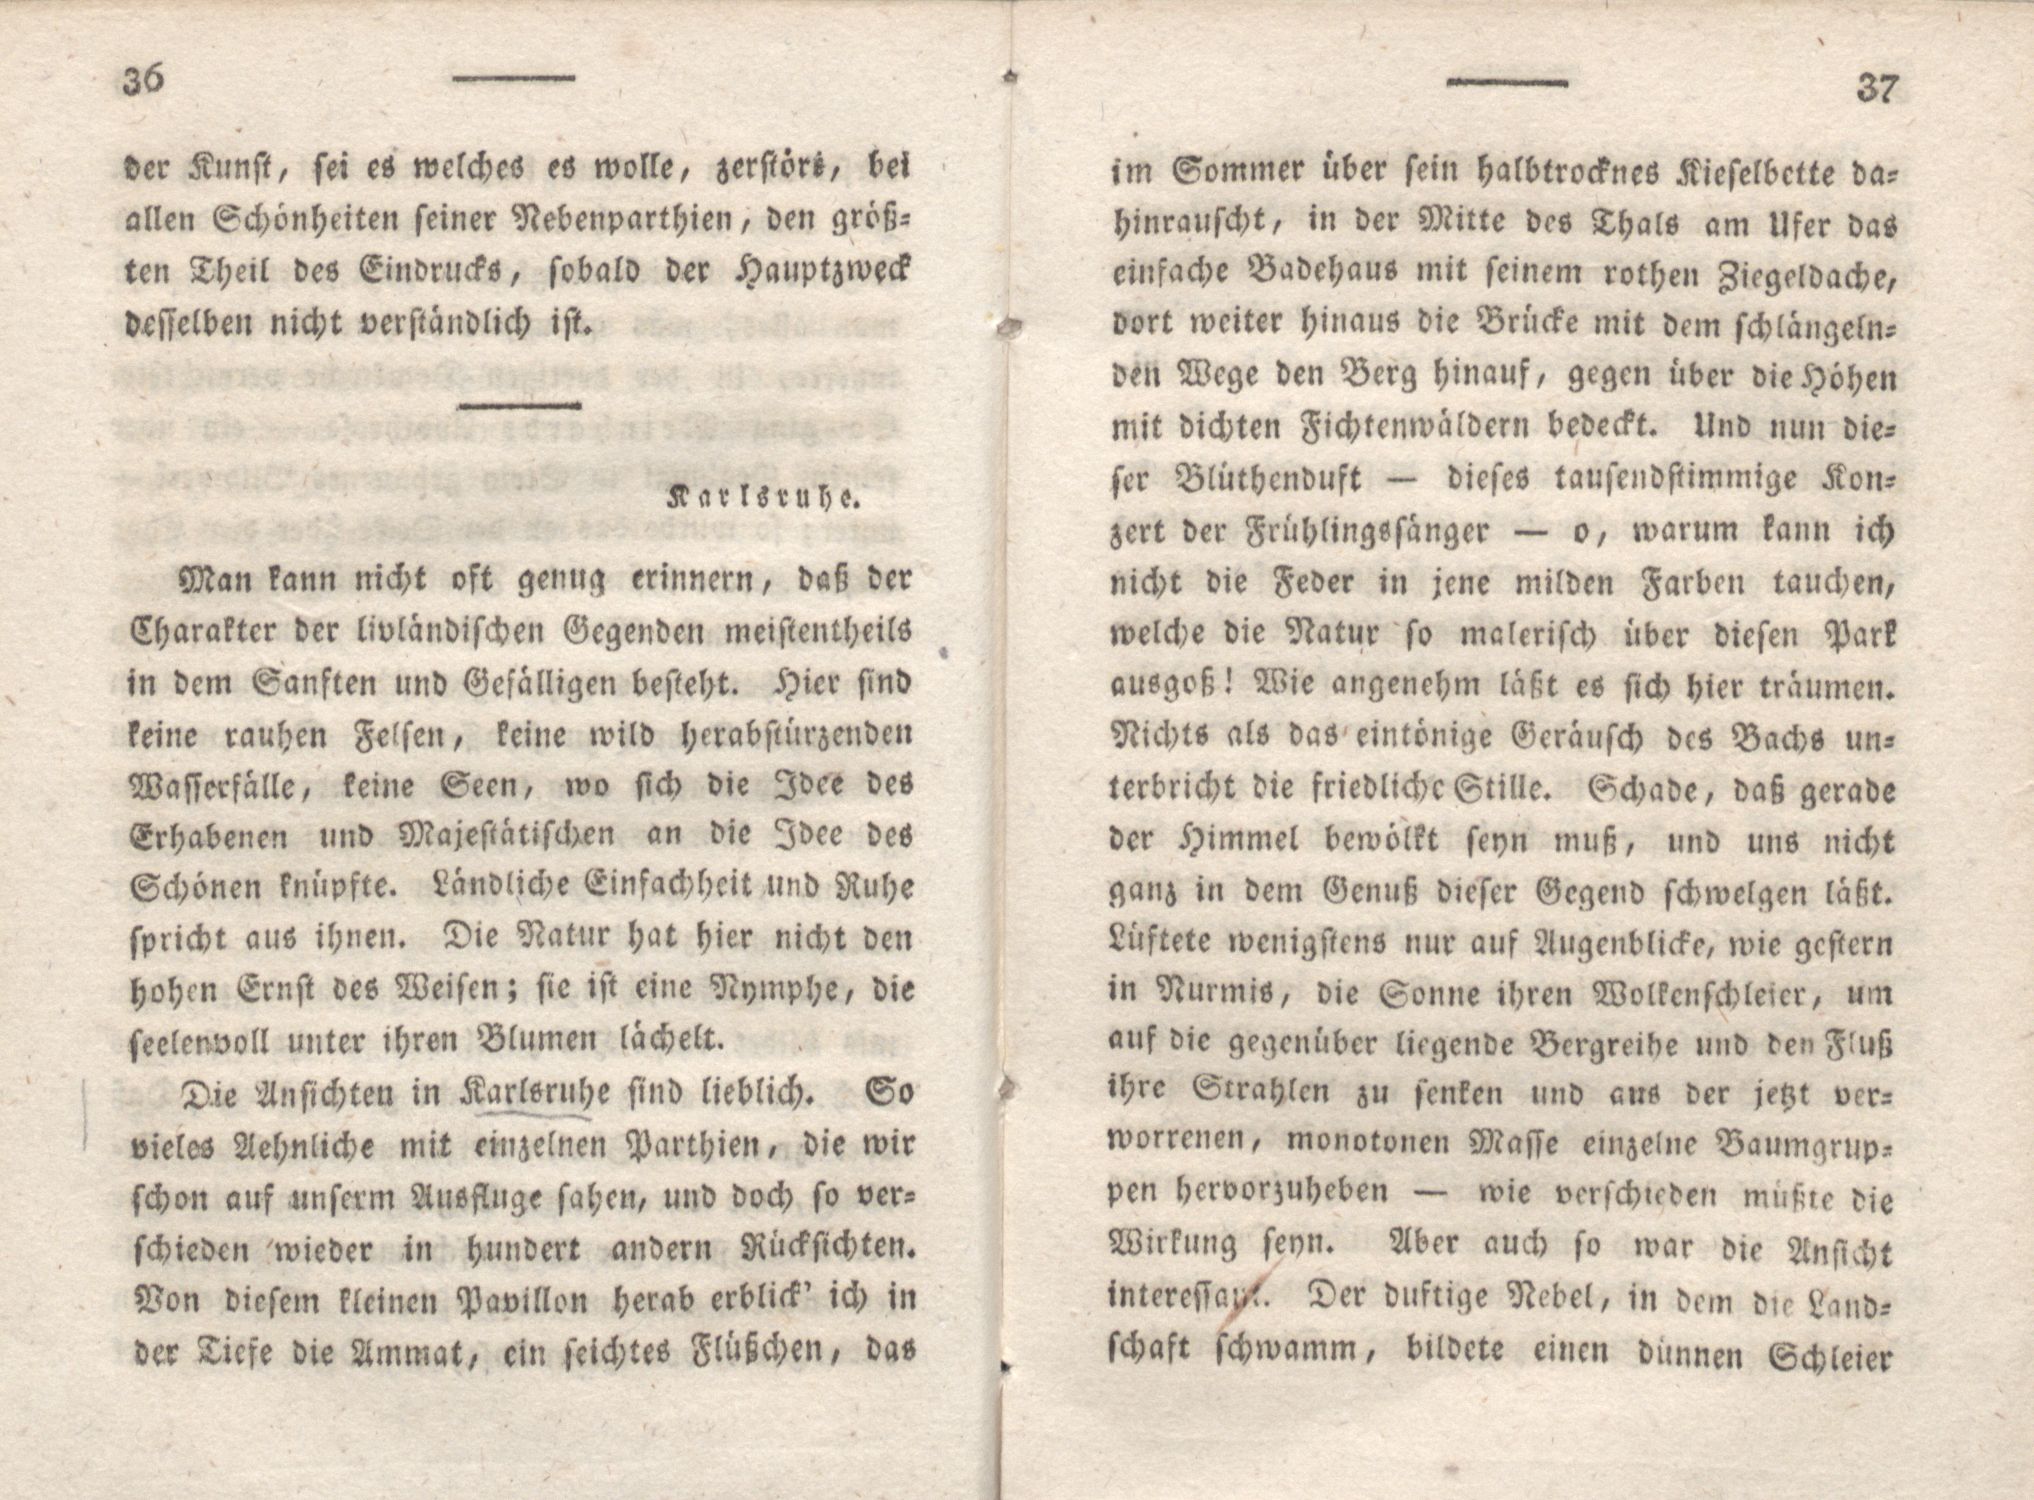 Livona [2] (1815) | 30. (36-37) Main body of text